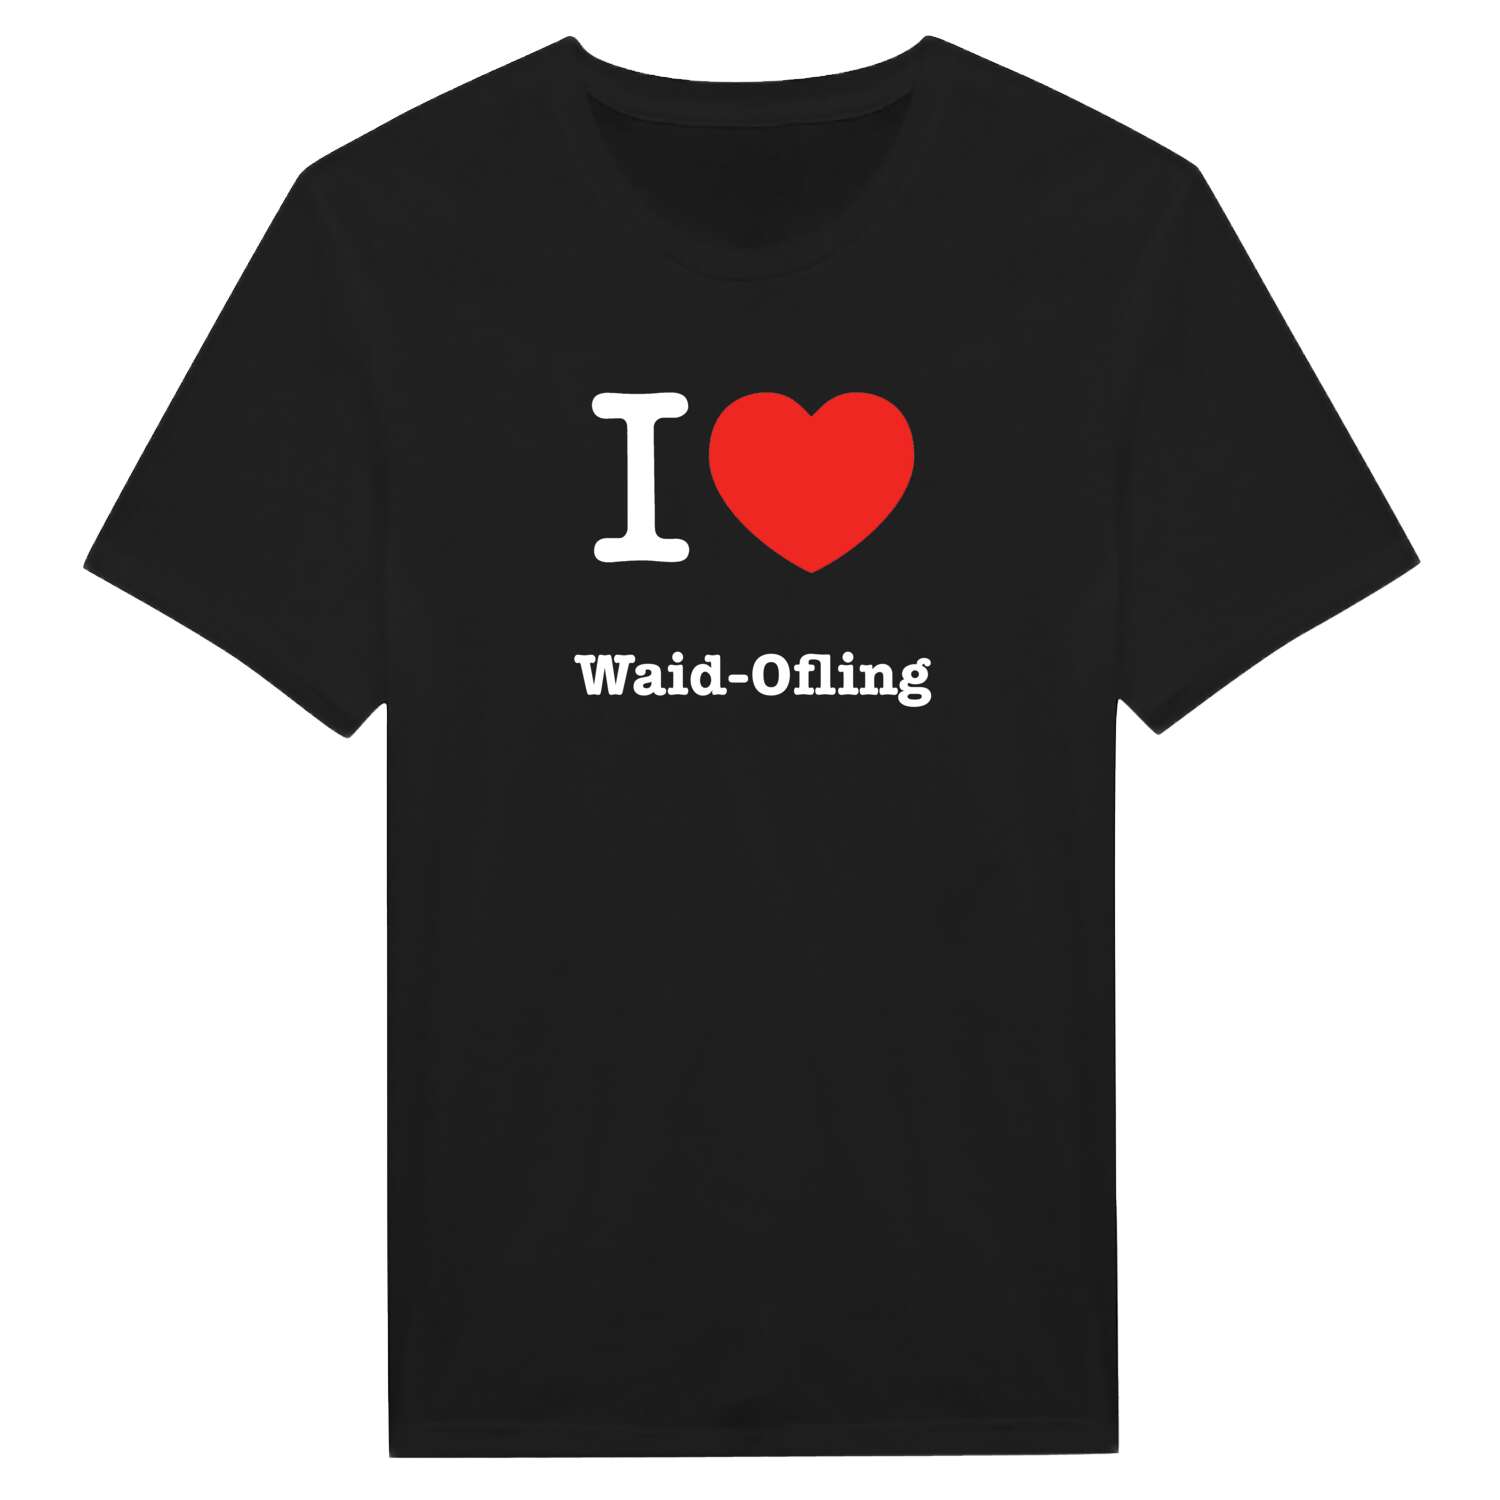 Waid-Ofling T-Shirt »I love«